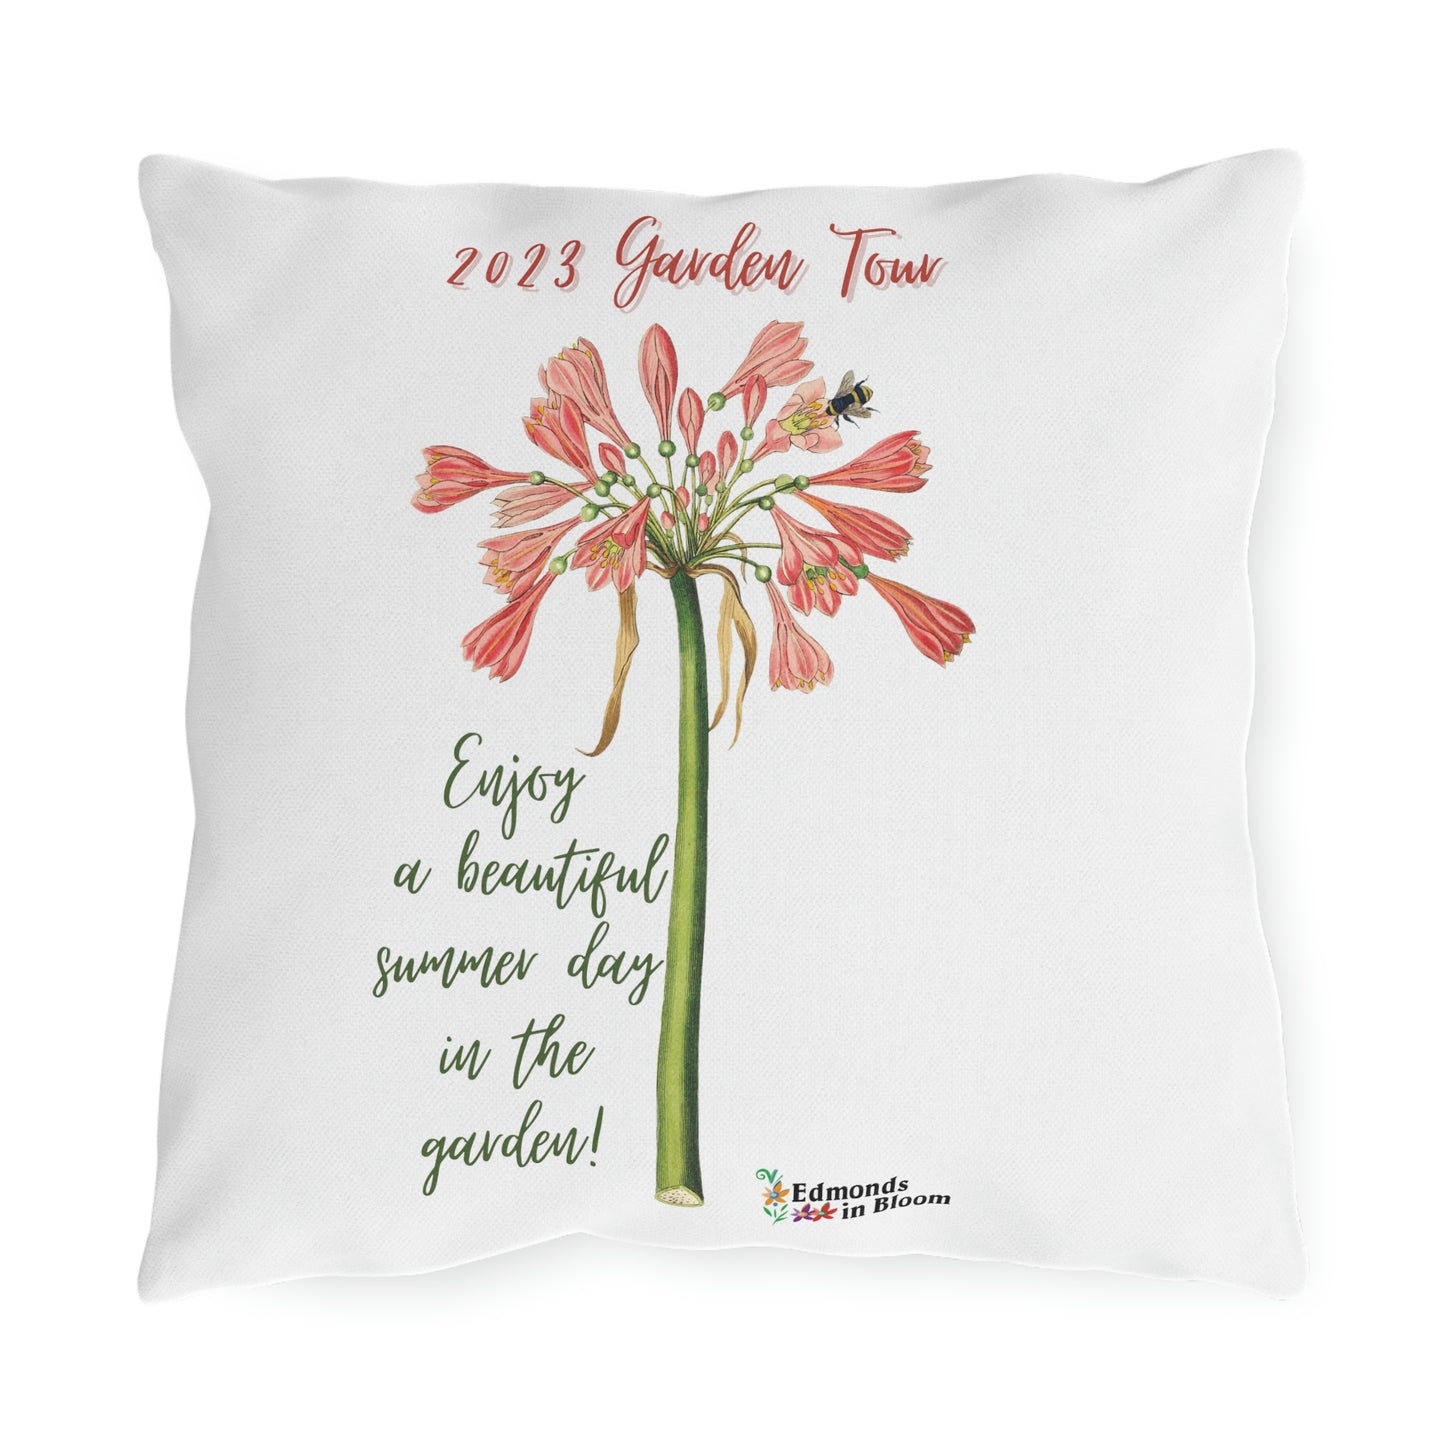 2023 Garden Tour Outdoor Pillows